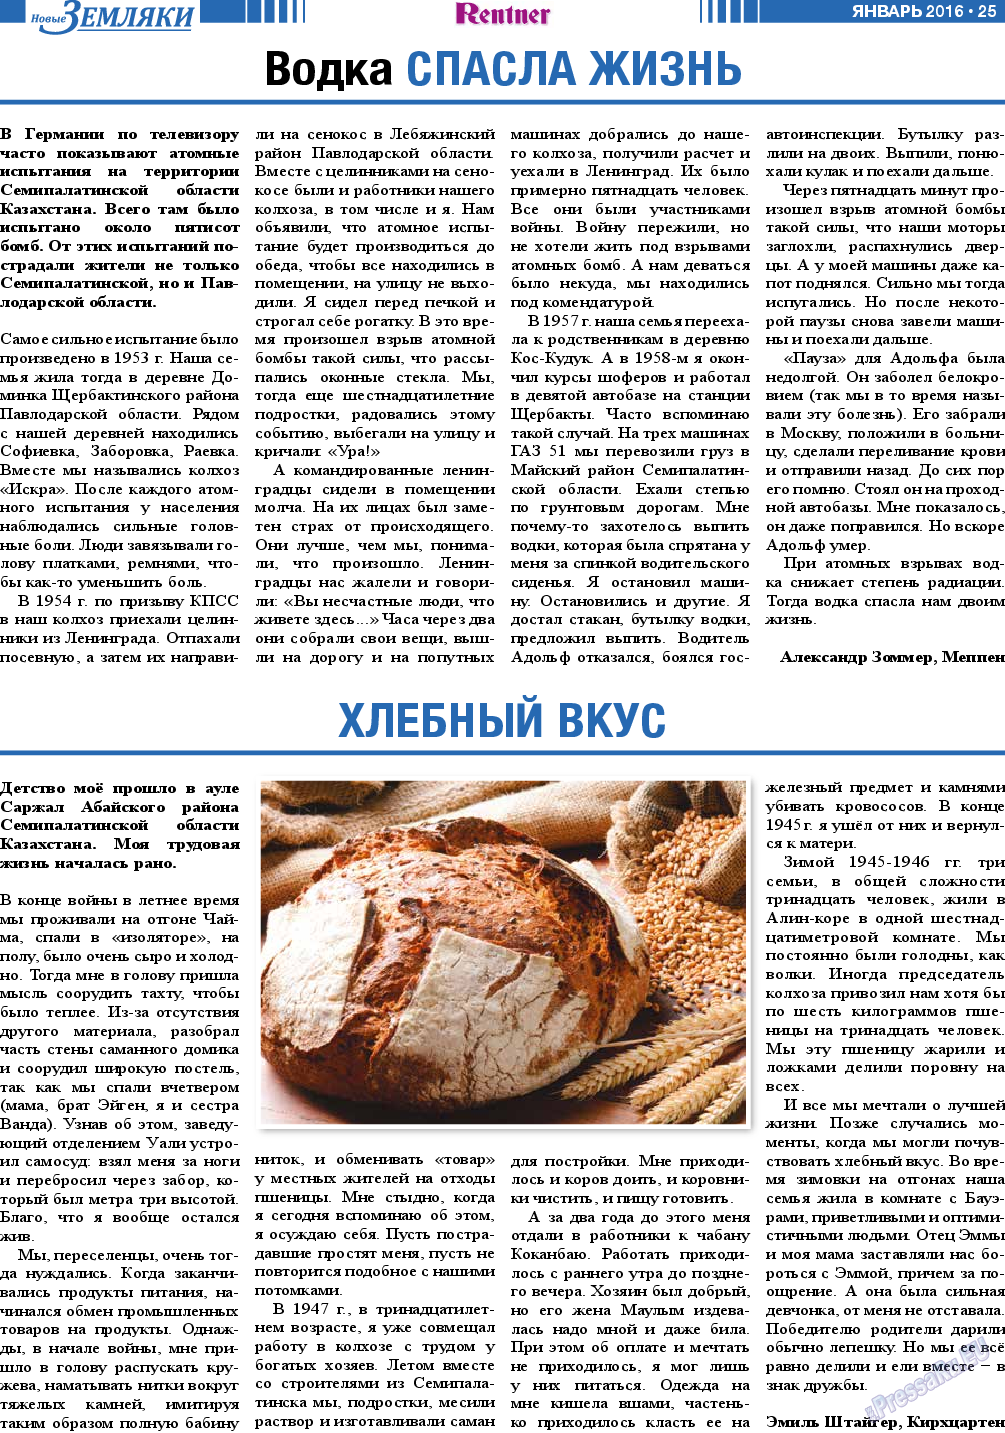 Новые Земляки, газета. 2016 №1 стр.25